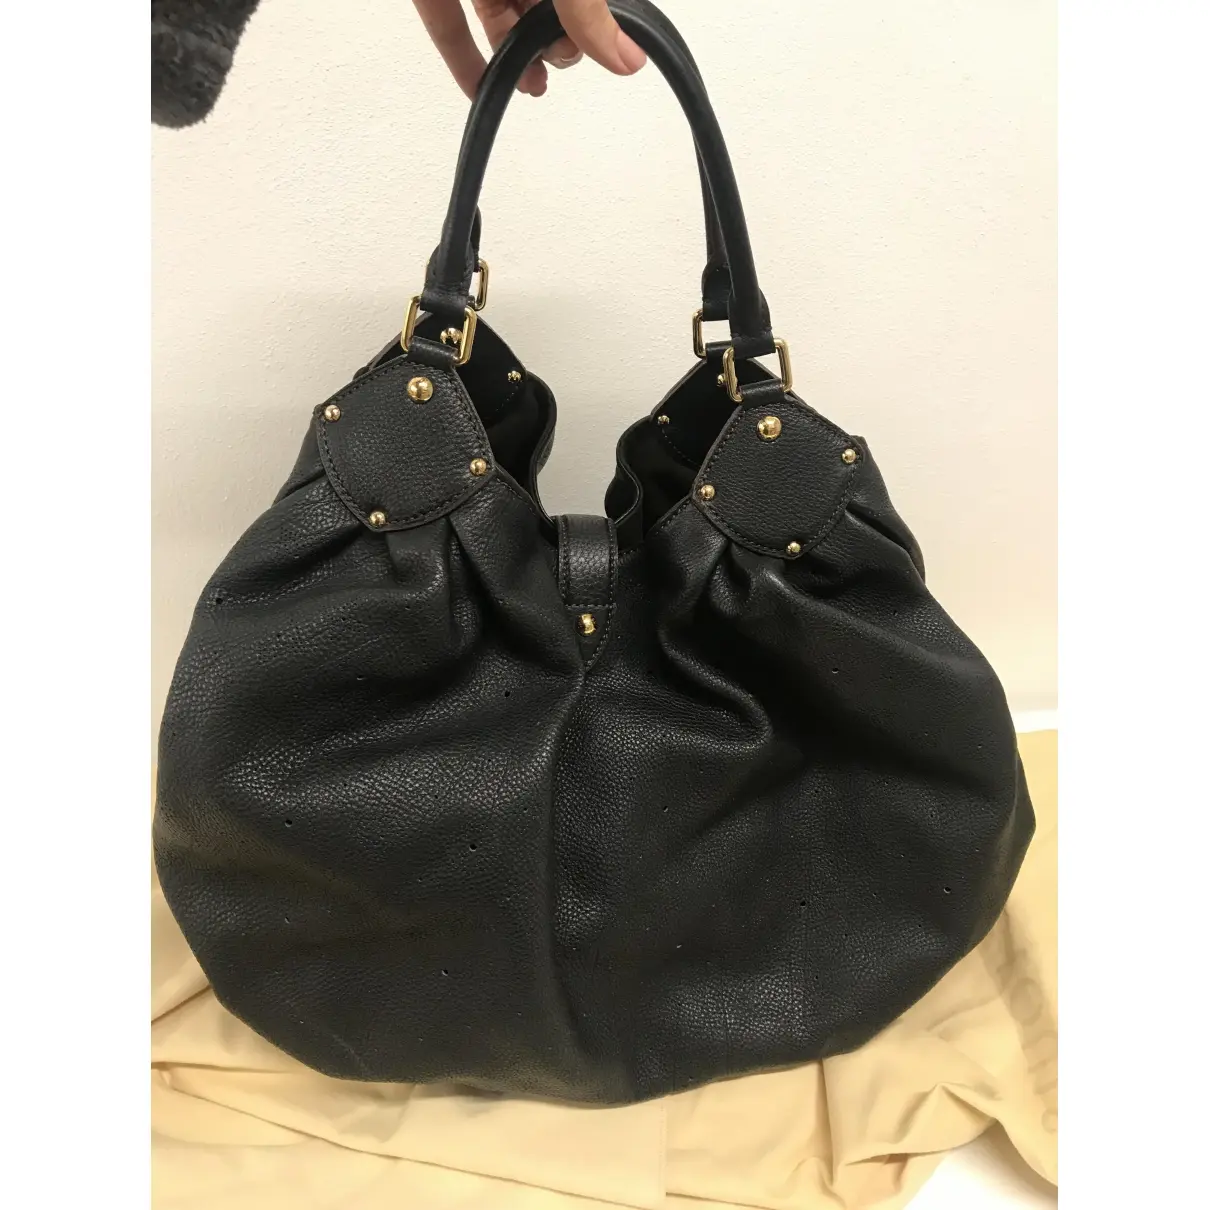 Louis Vuitton Mahina leather handbag for sale